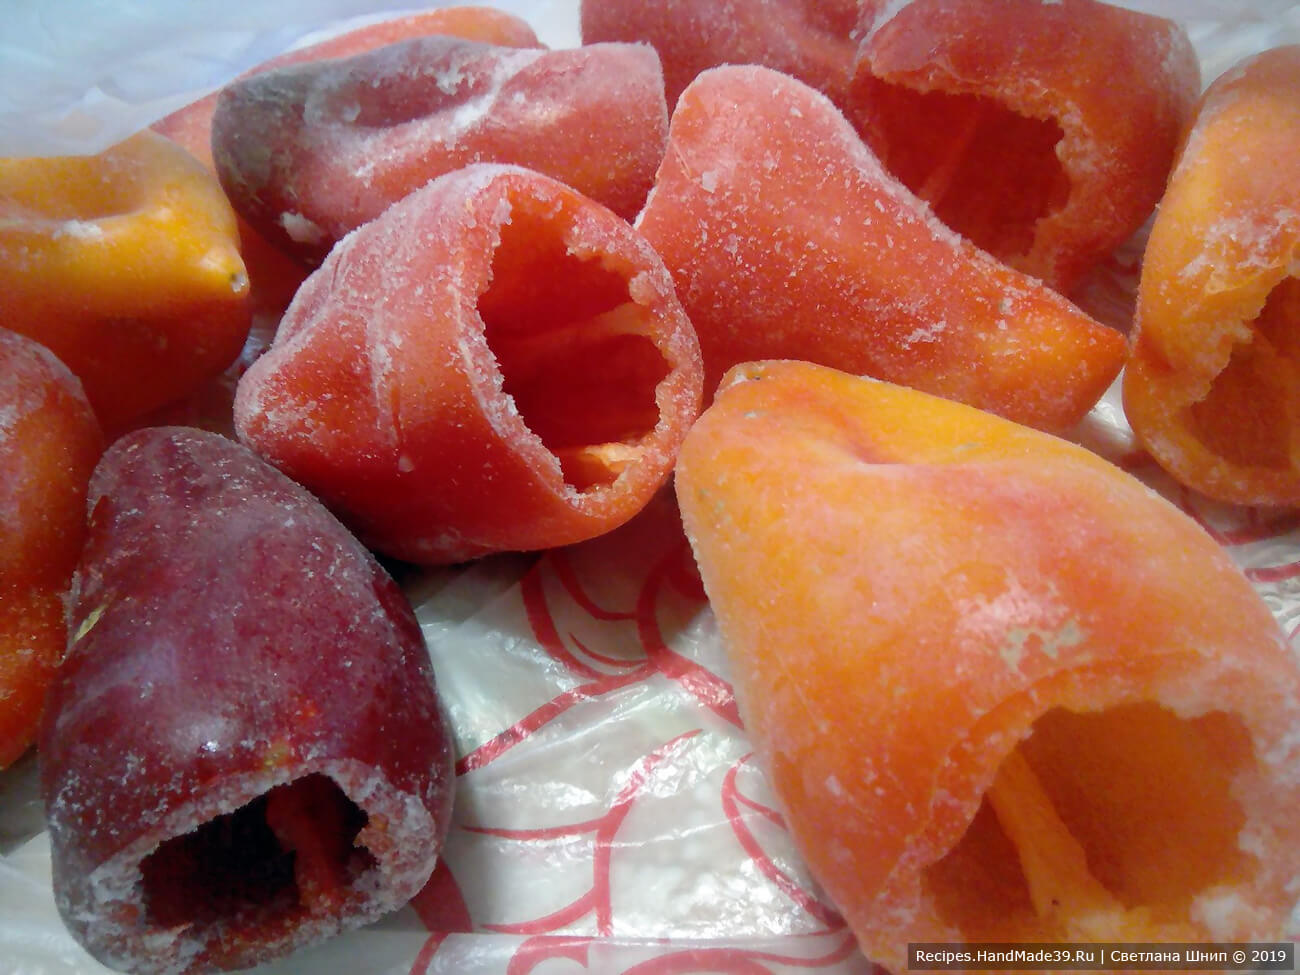 Фаршировка перца: сладкий болгарский перец вымыть, срезать верхушку, удалить сердцевину с семенами